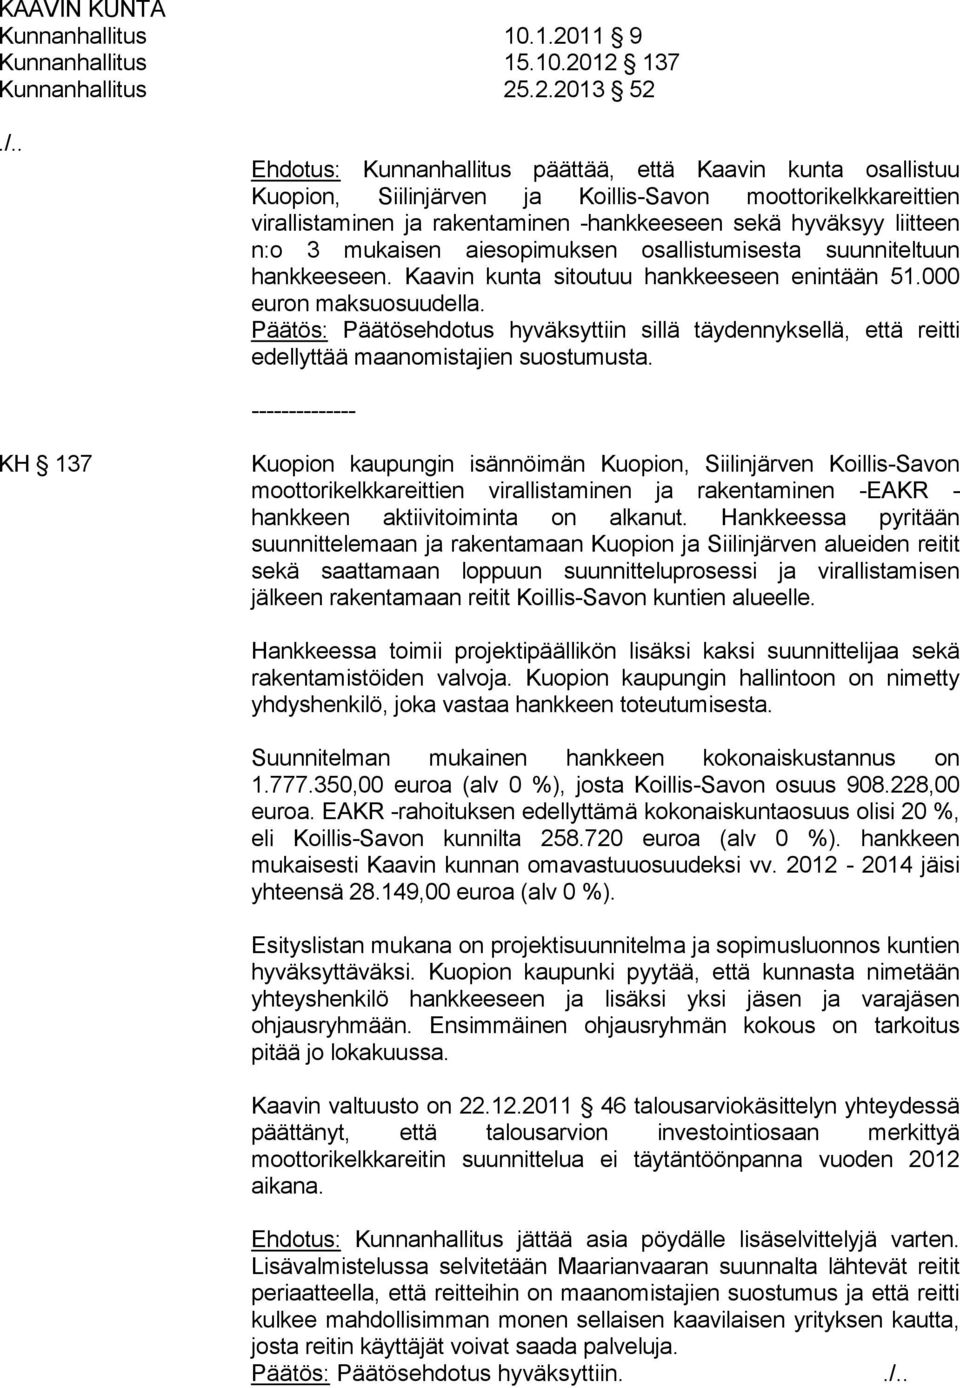 12 137 Kunnanhallitus 25.2.2013 52 Ehdotus: Kunnanhallitus päättää, että Kaavin kunta osallistuu Kuopion, Siilinjärven ja Koillis-Savon moottorikelkkareittien virallistaminen ja rakentaminen